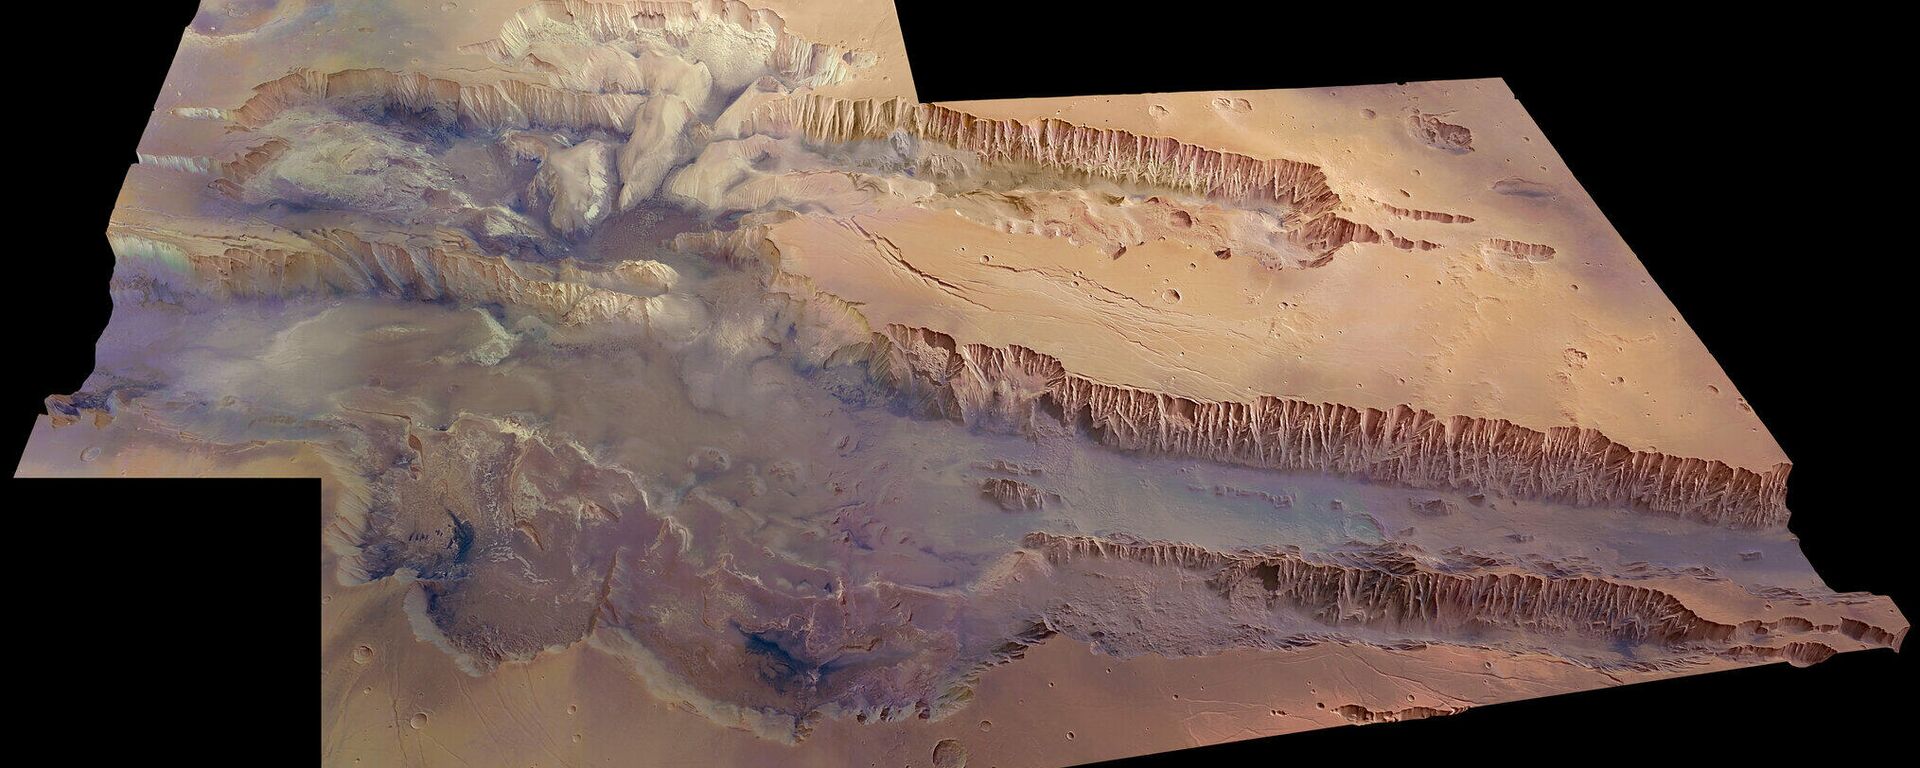 Valles Manieris, zona de Marte donde hay yacimientos de agua.  - Sputnik Mundo, 1920, 17.12.2021